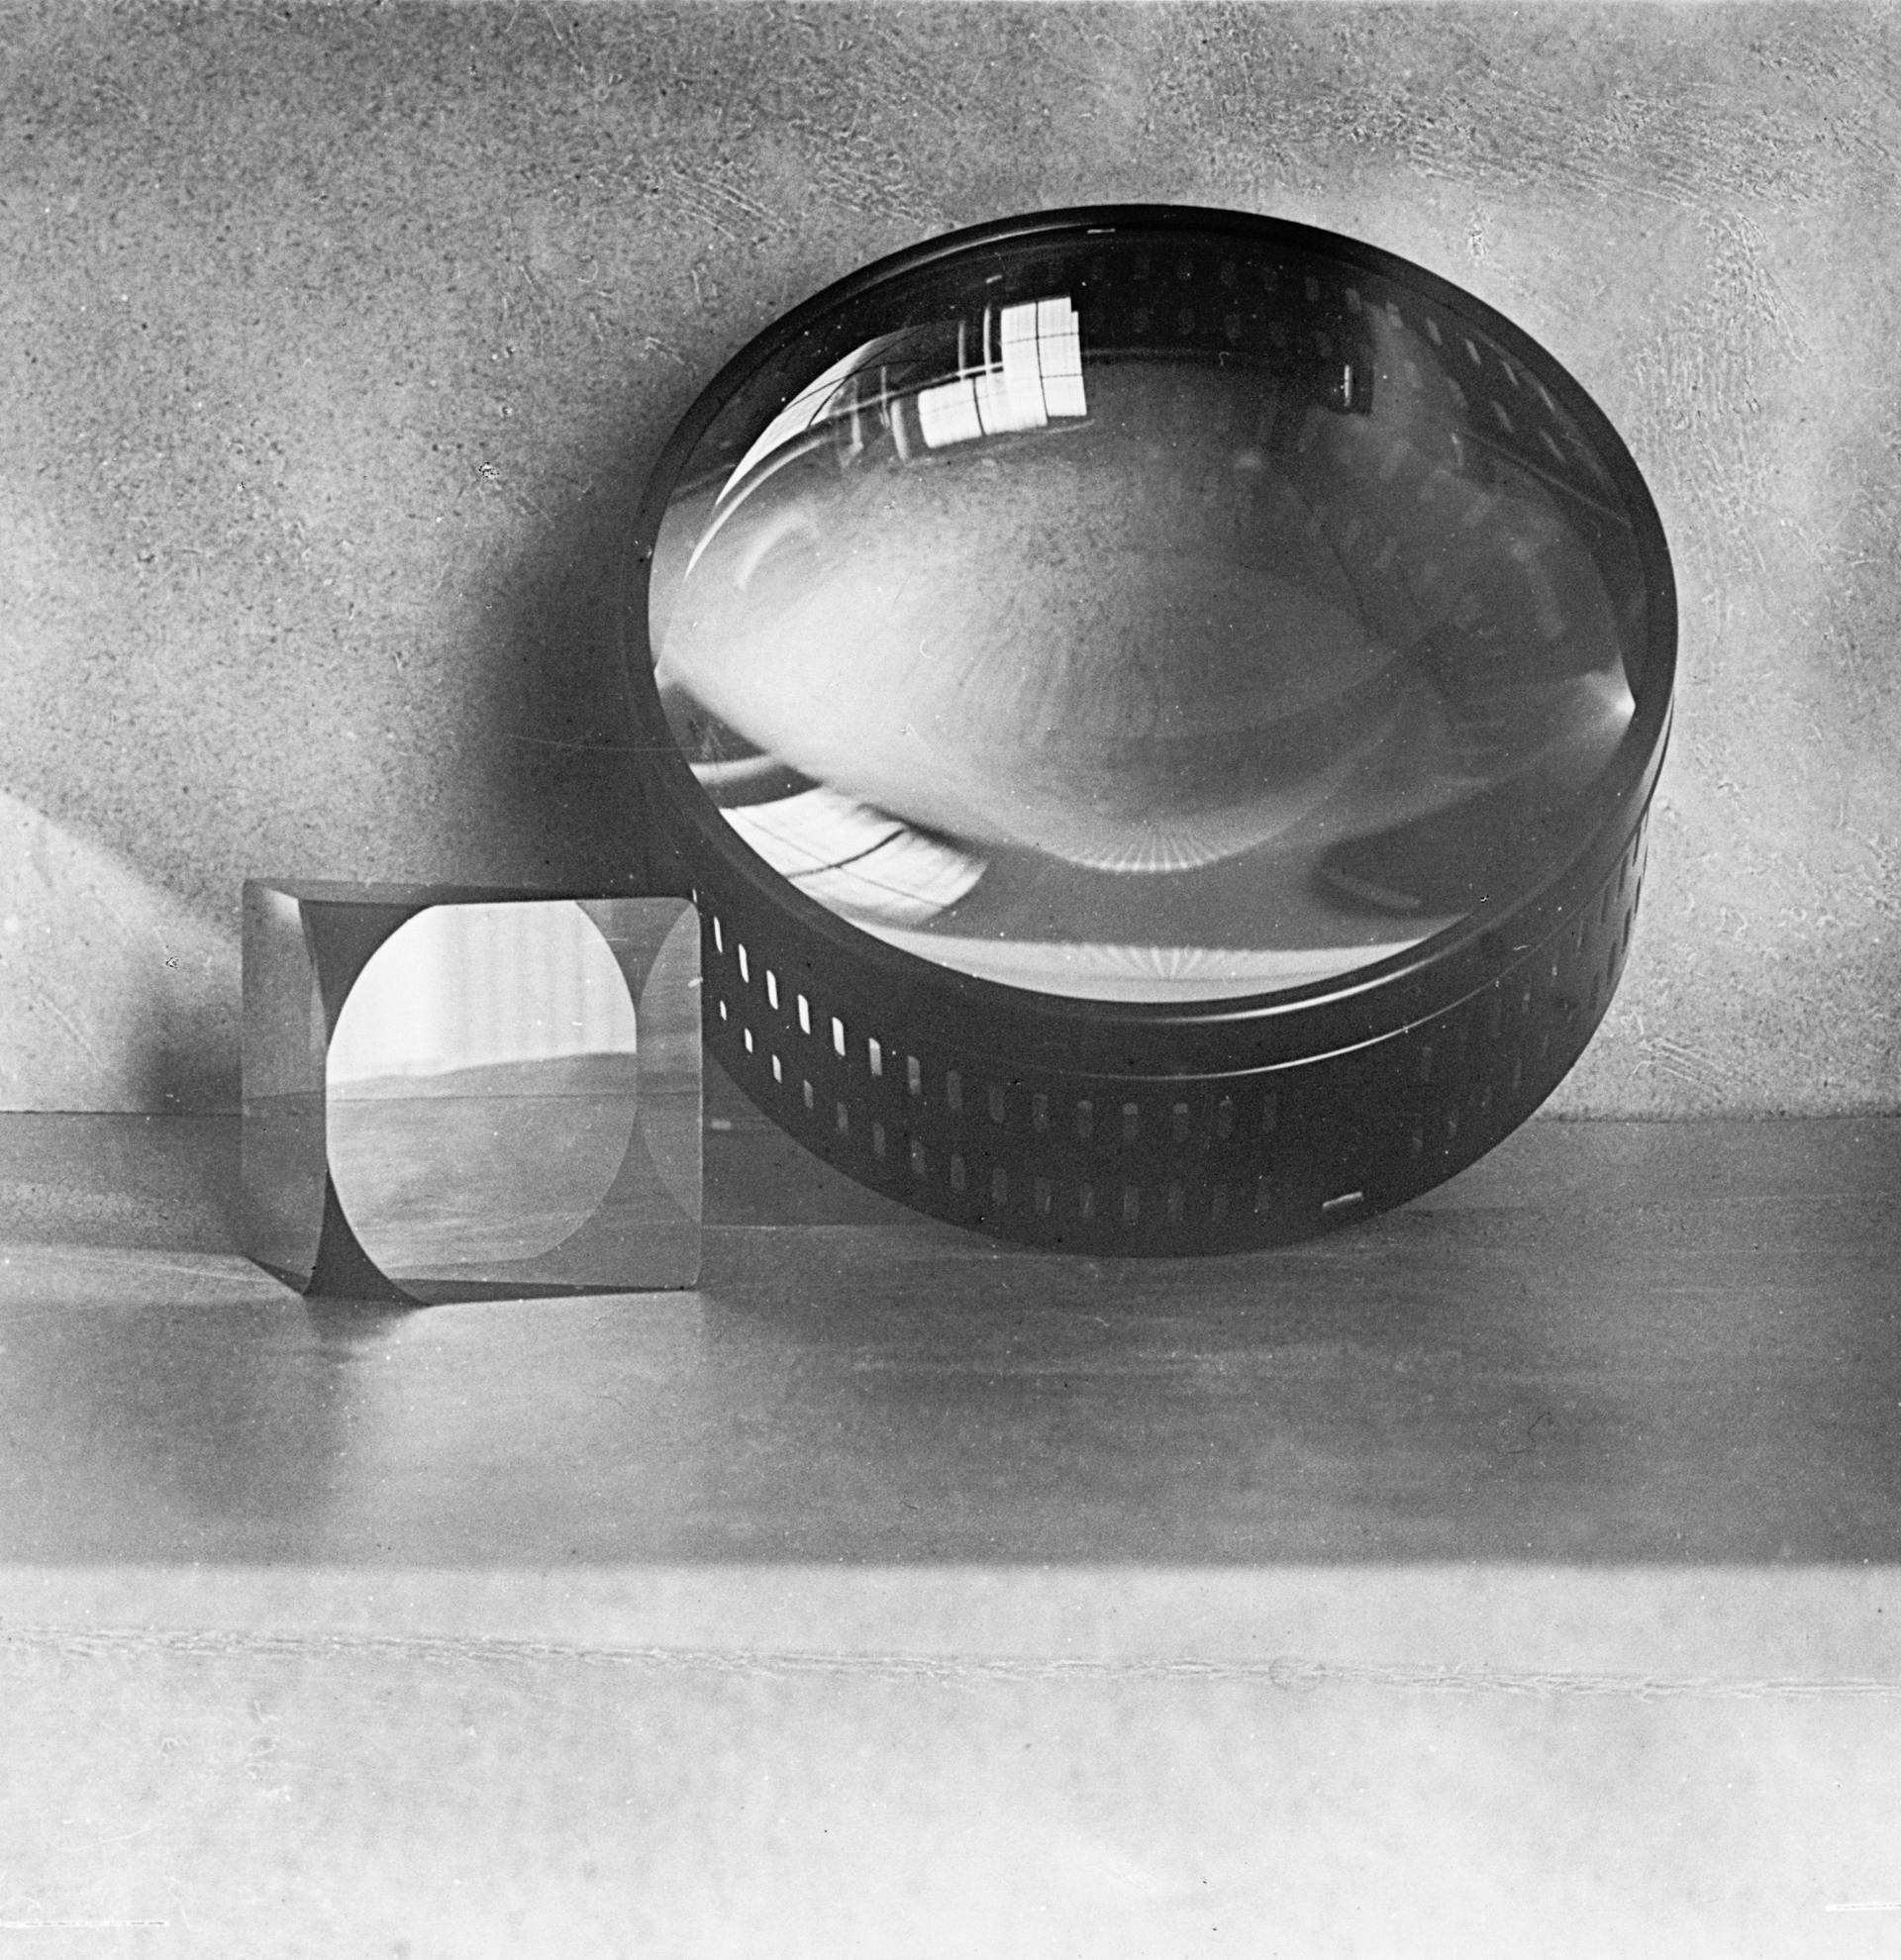  Condensator en een prisma voor projectie. Foto Franz Stoedtner. Collectie SLUB Dresden / Deutsche Fotothek